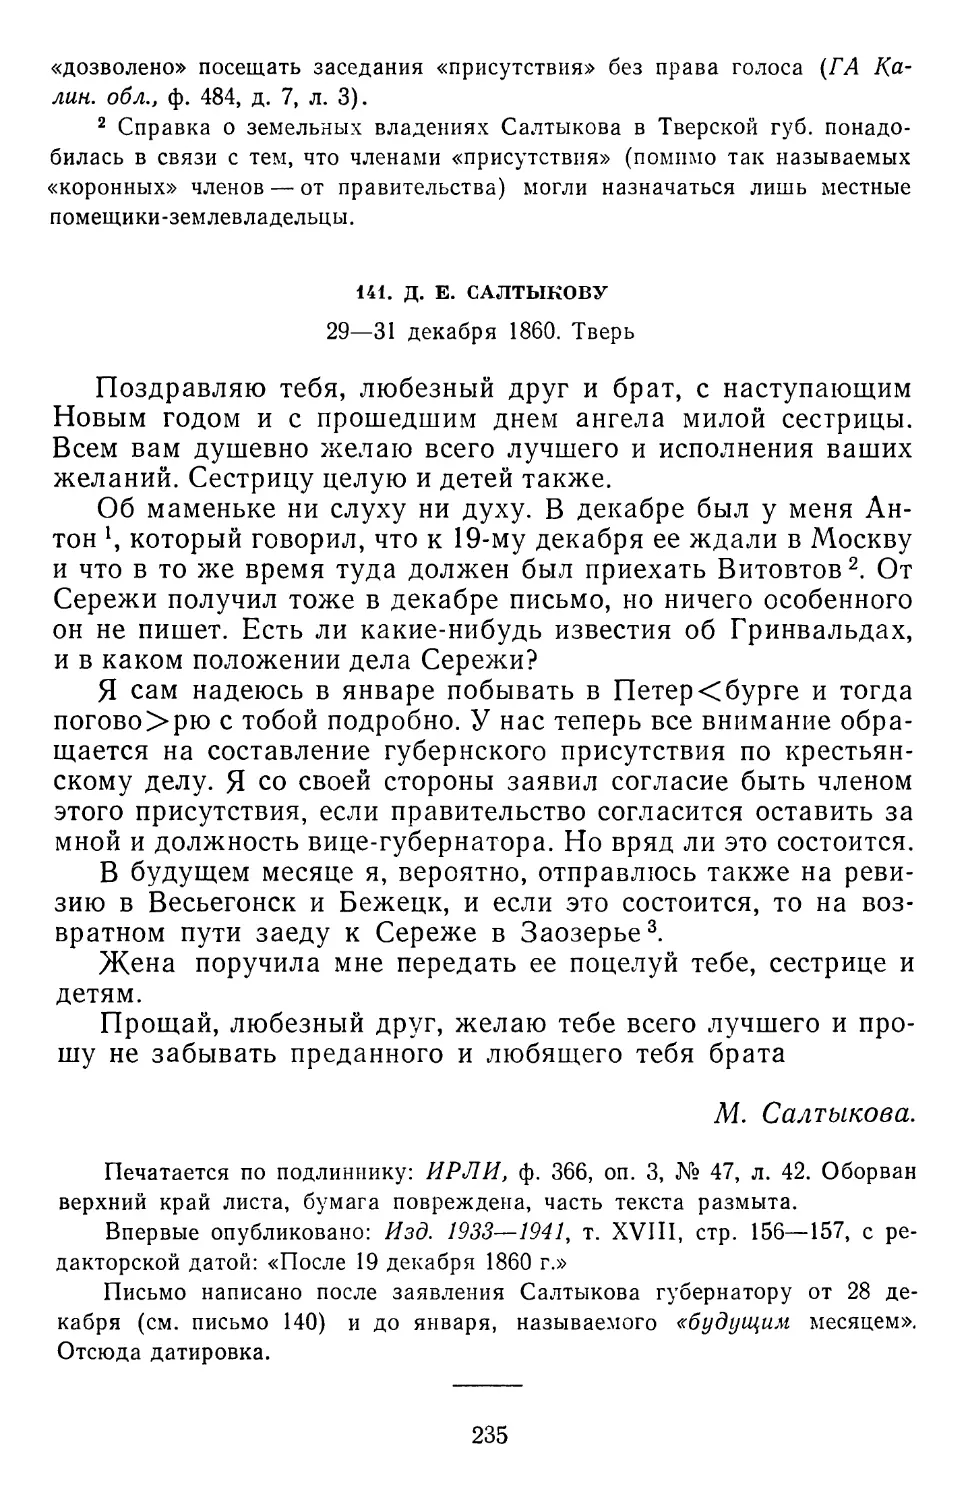 141.Д. Е. Салтыкову. 28—29 декабря 1860. Тверь